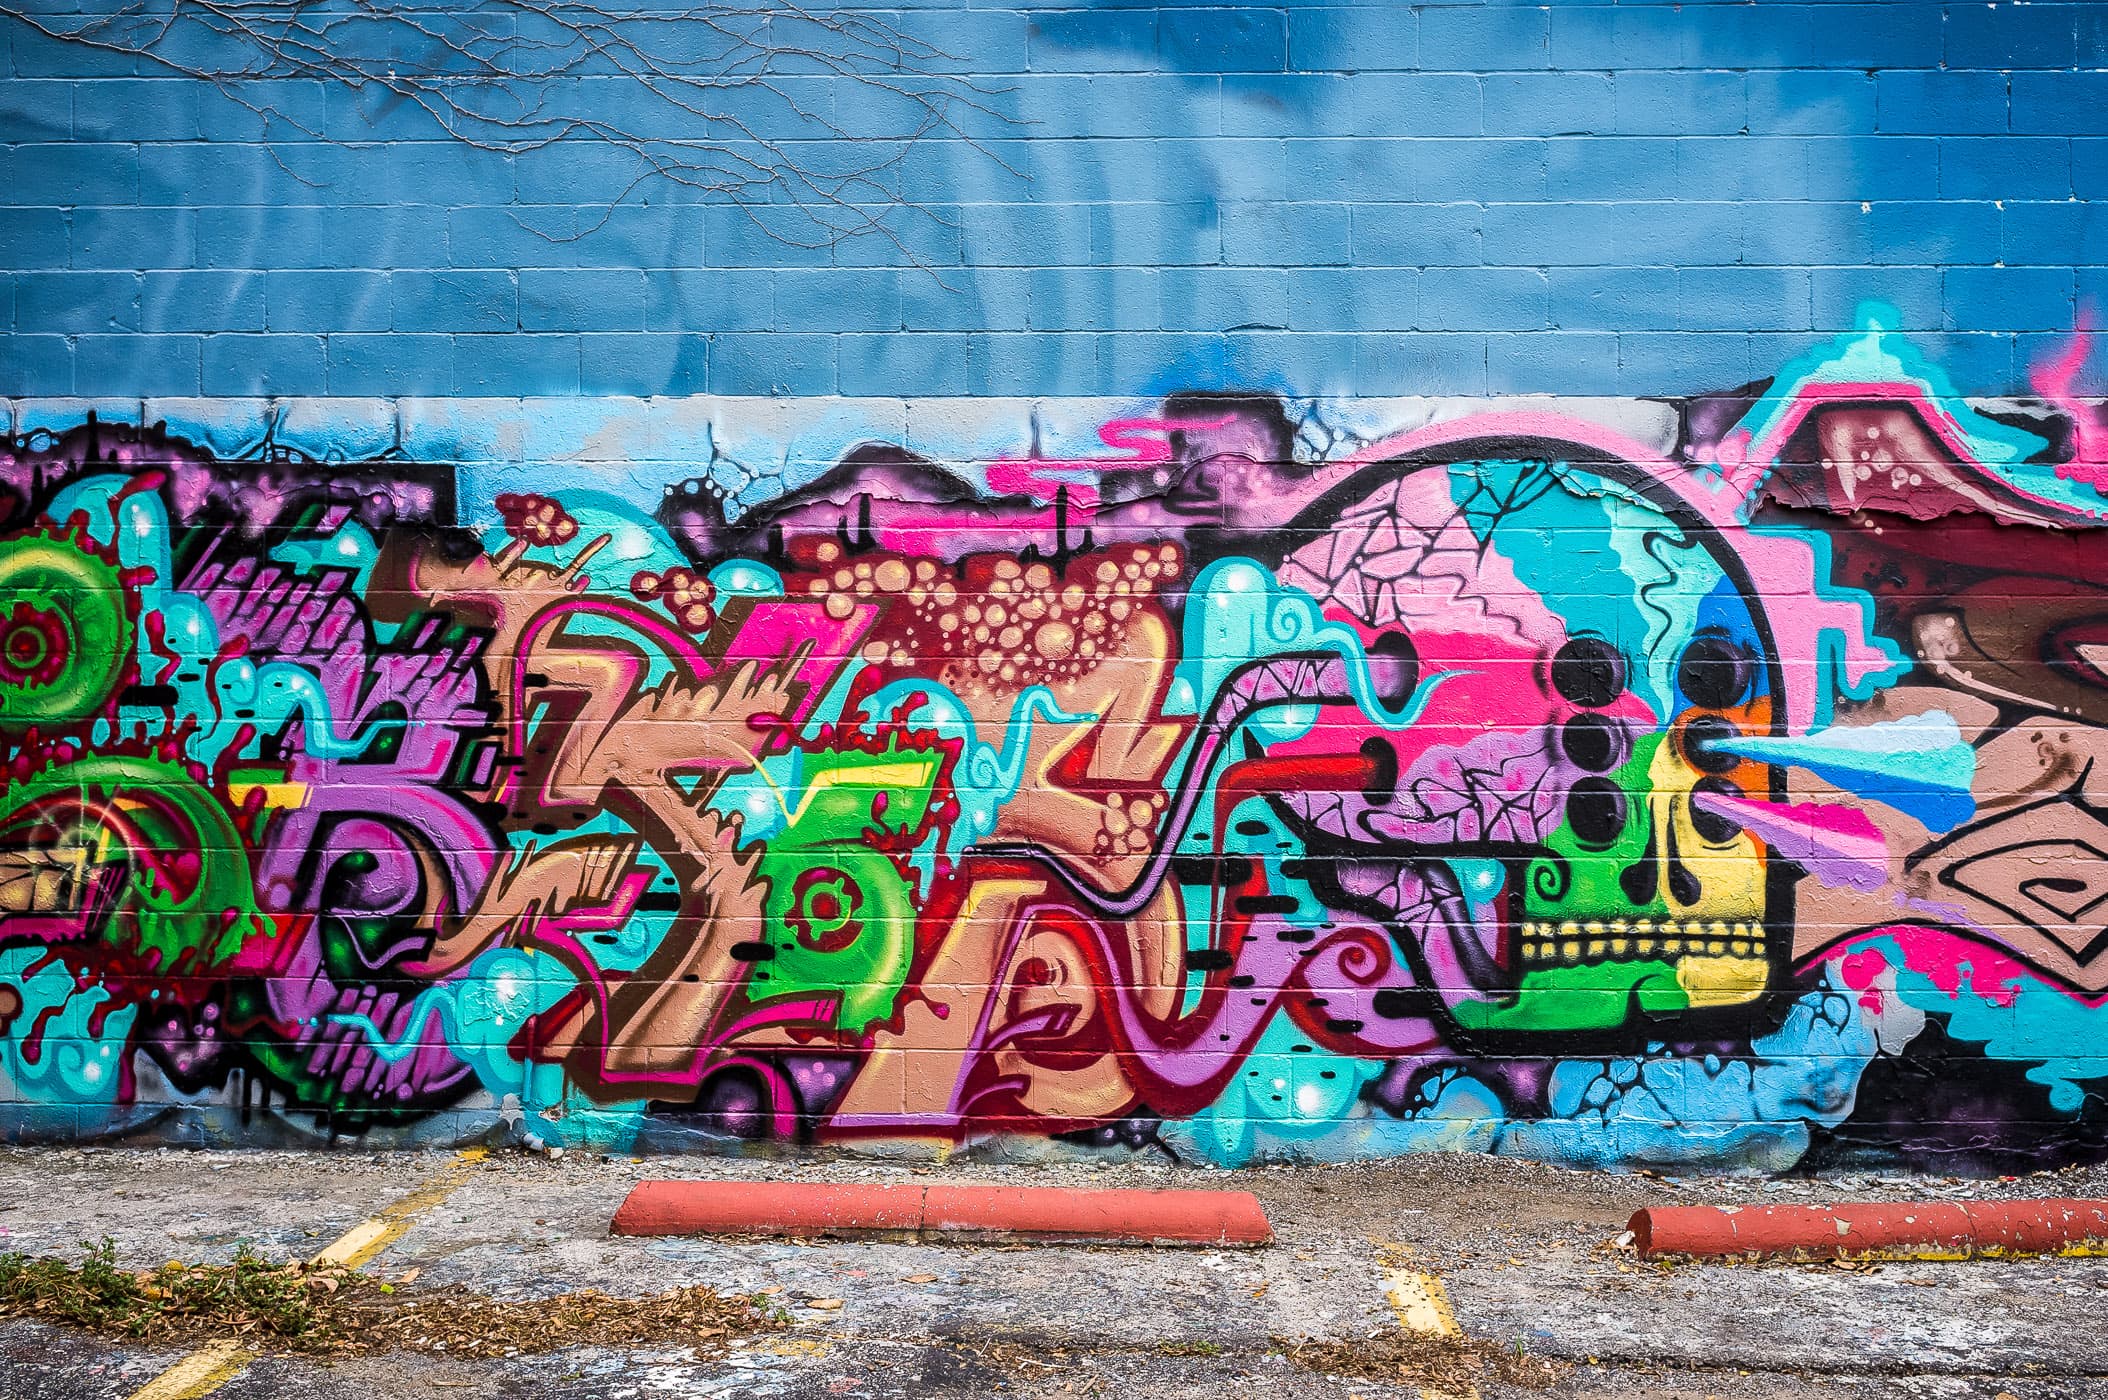 Artistic, surreal graffiti spotted in Deep Ellum, Dallas.